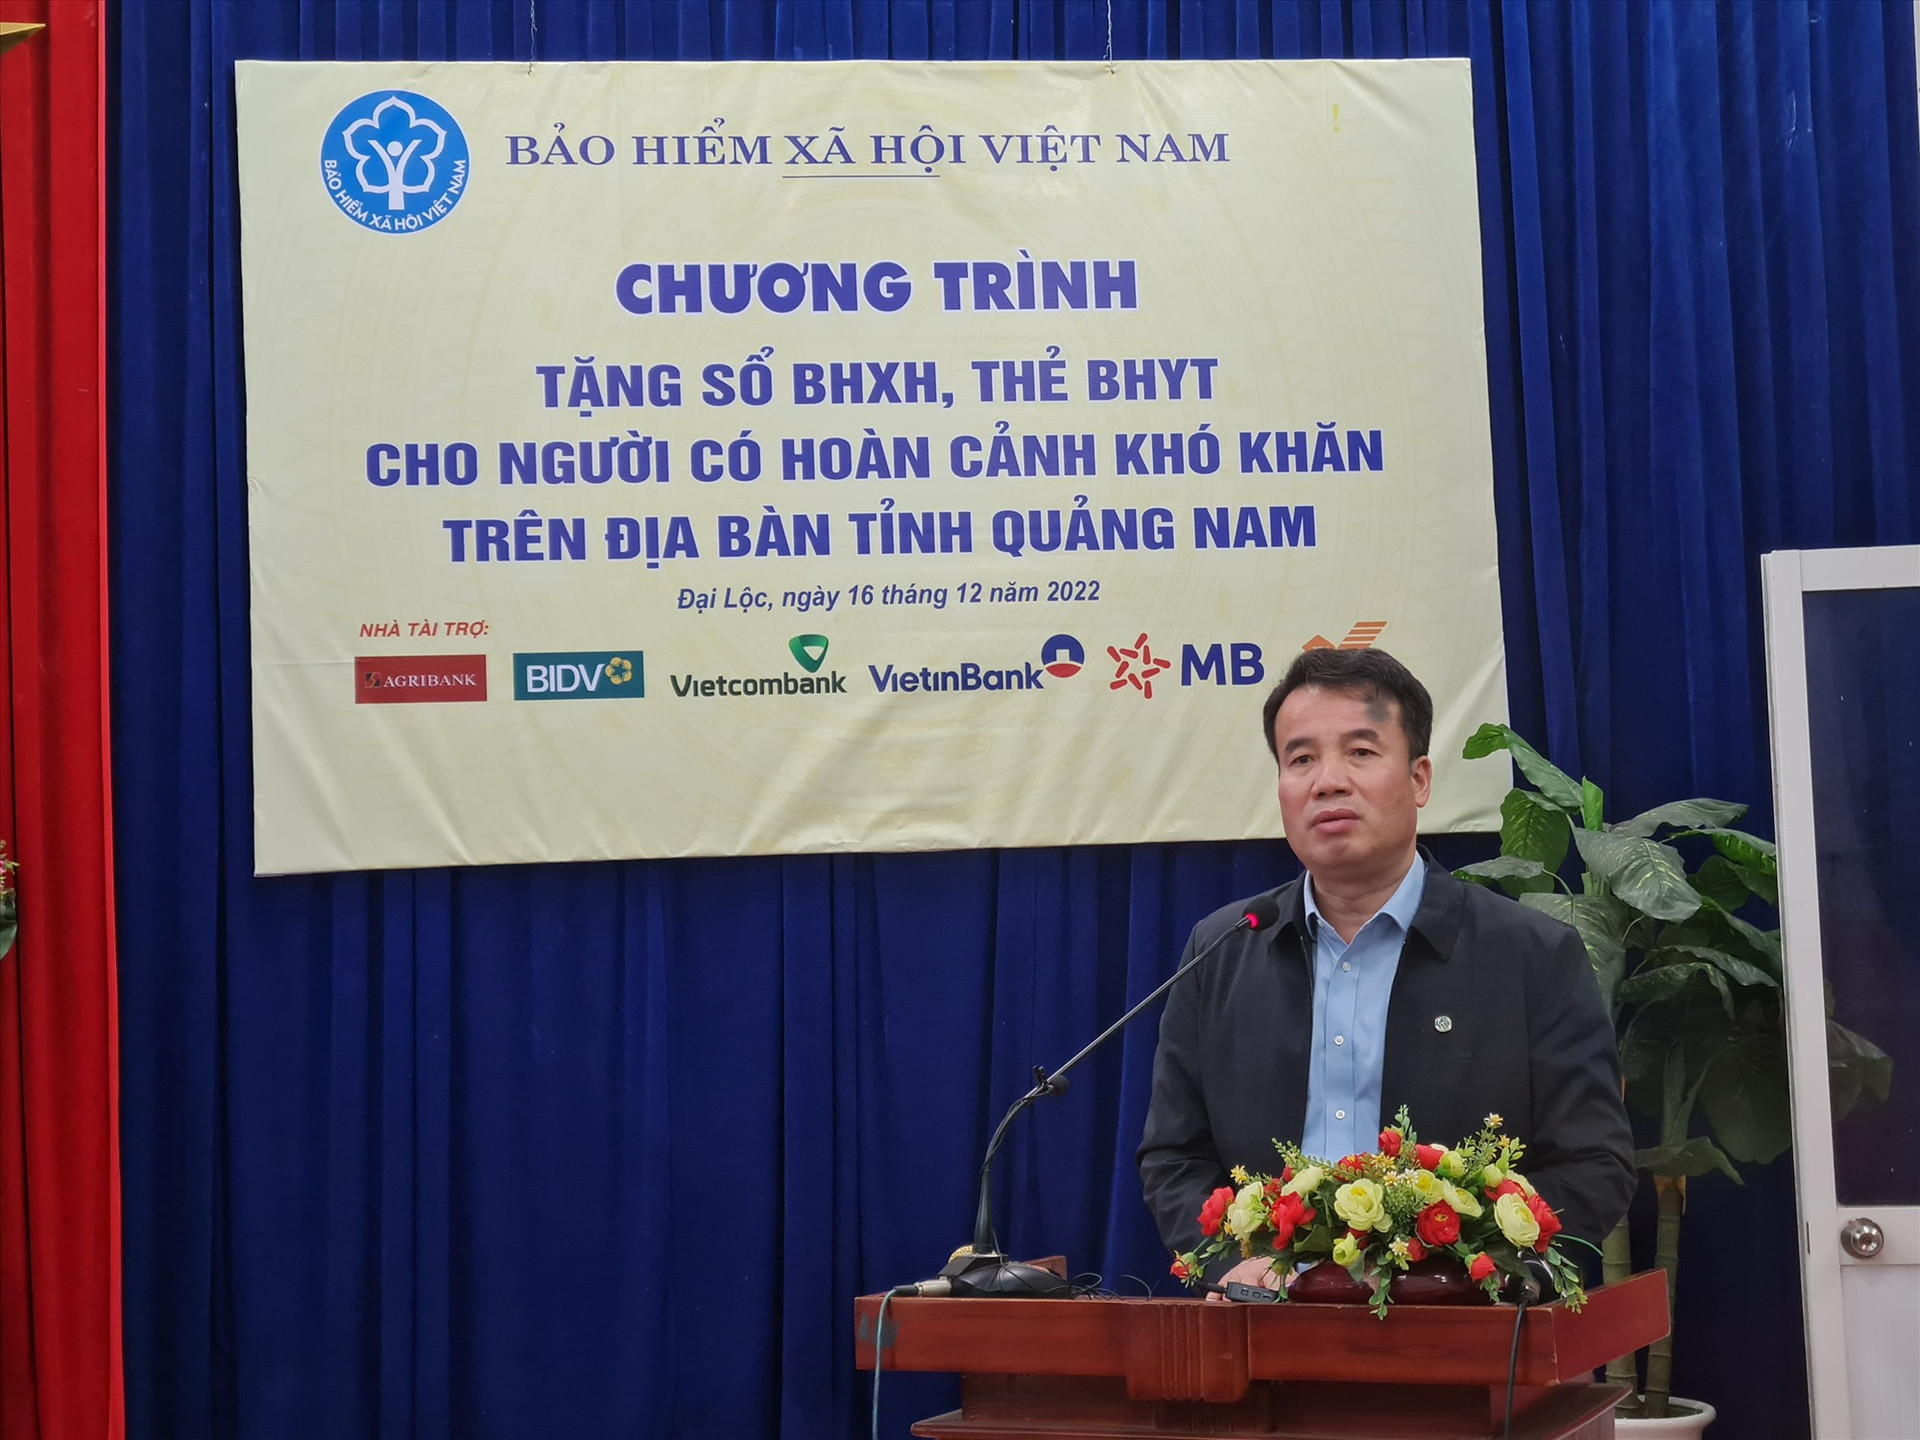 Tổng giám đốc BHXH Việt Nam phát biểu tại chương trình. Ảnh: D.L